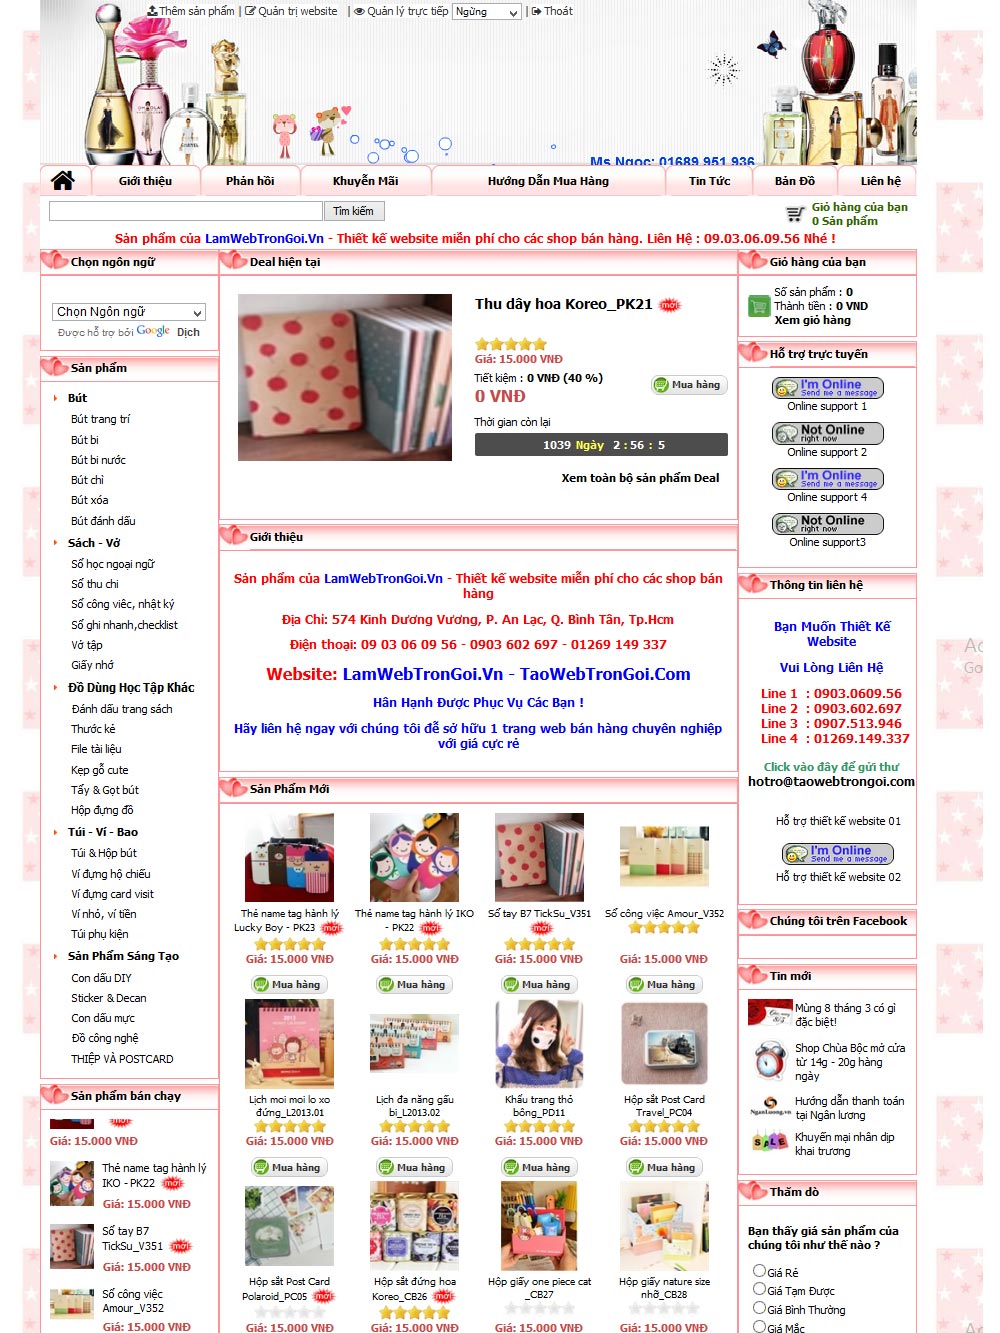 TaoWebTronGoi.Com. Thiết kế web Hơn 300 giao diện cực đẹp. Giá chỉ bằng 3 ly cafe ! - 13